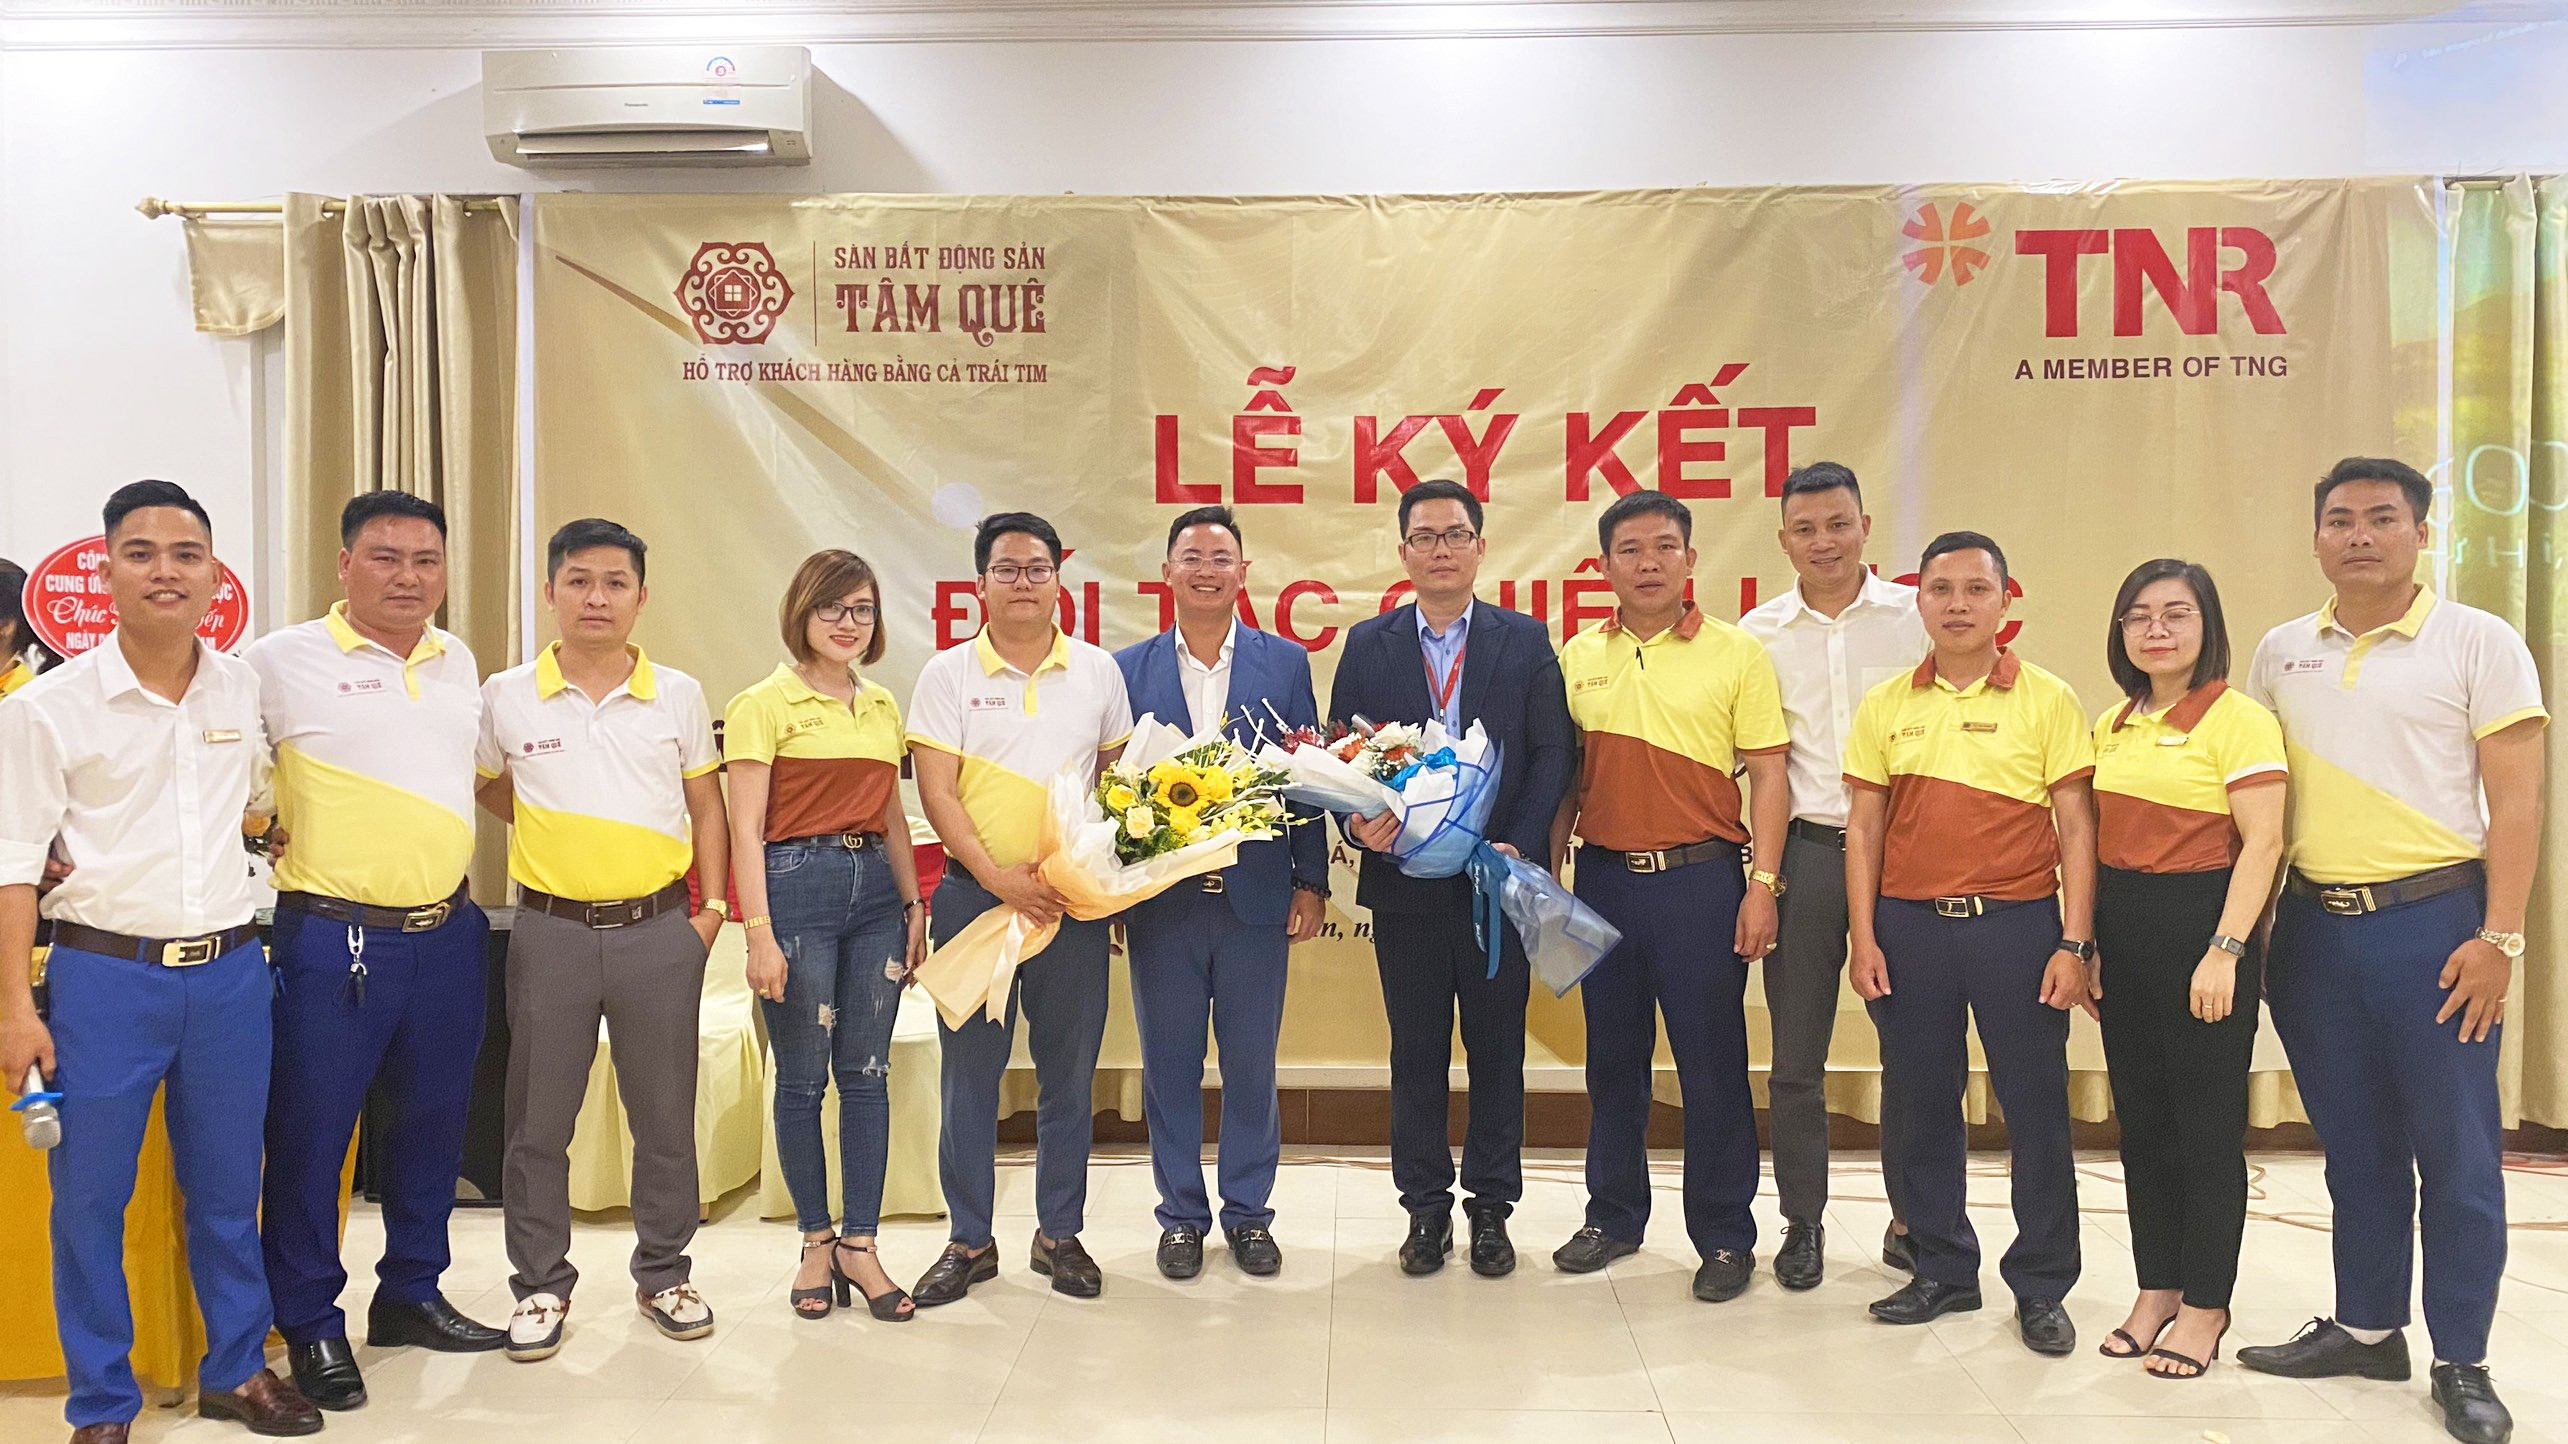 Tâm Quê sẽ là cầu nối để TNR Holdings Vietnam đưa sản phẩm khu vực miền trung đến gần khách hàng hơn.Ảnh: PV